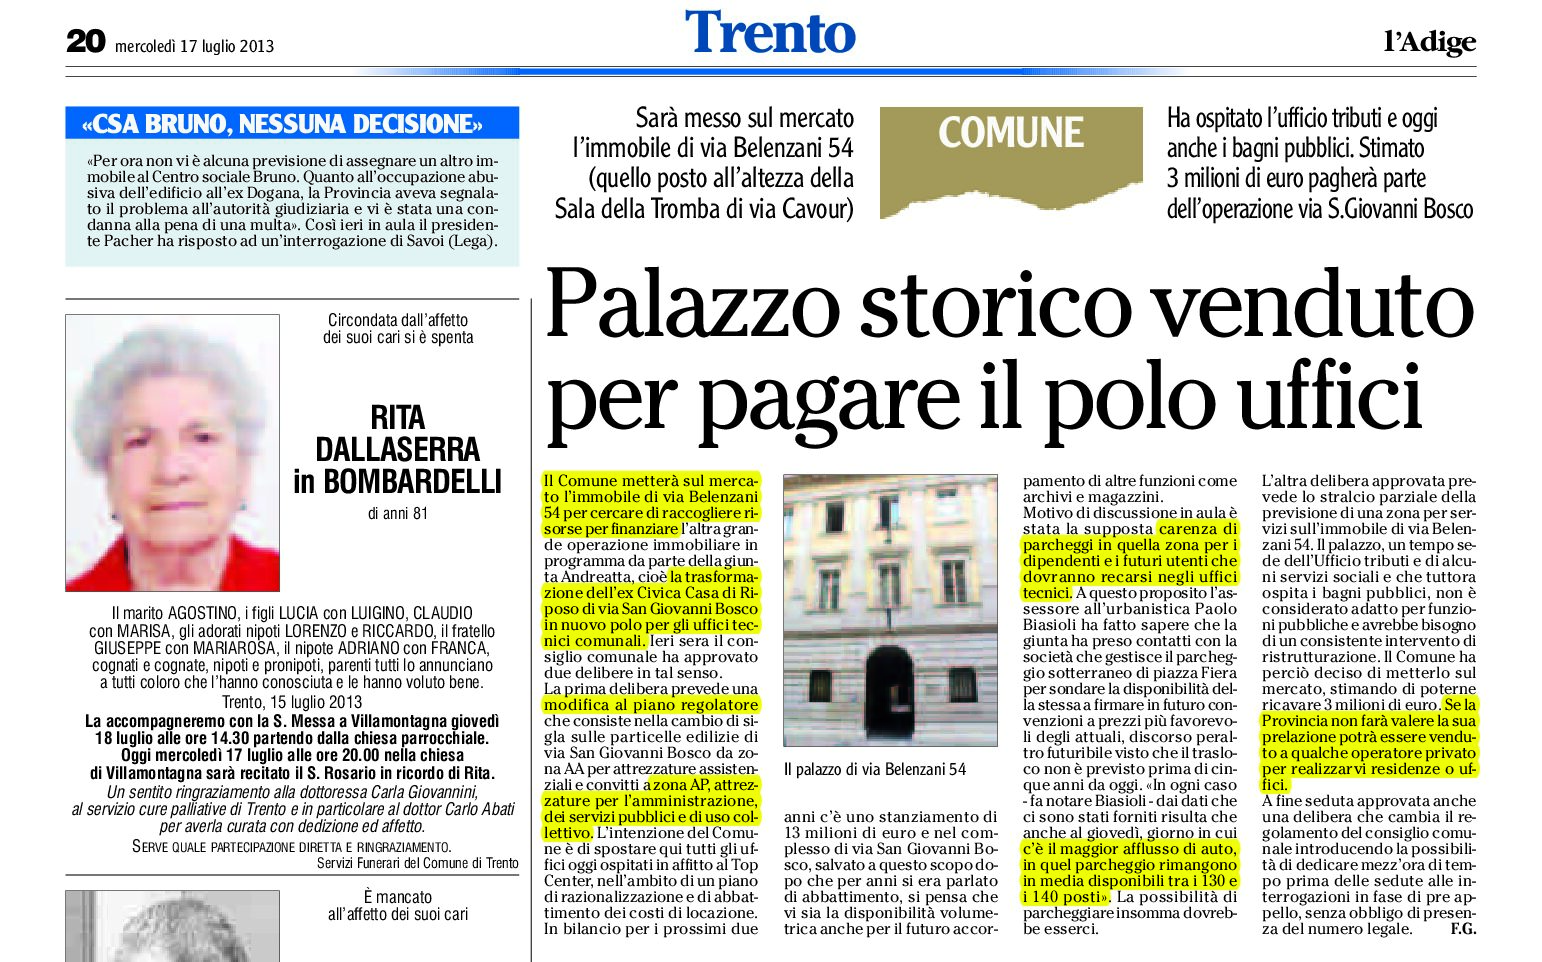 Trento: Palazzo storico venduto dal Comune per pagare il polo uffici.